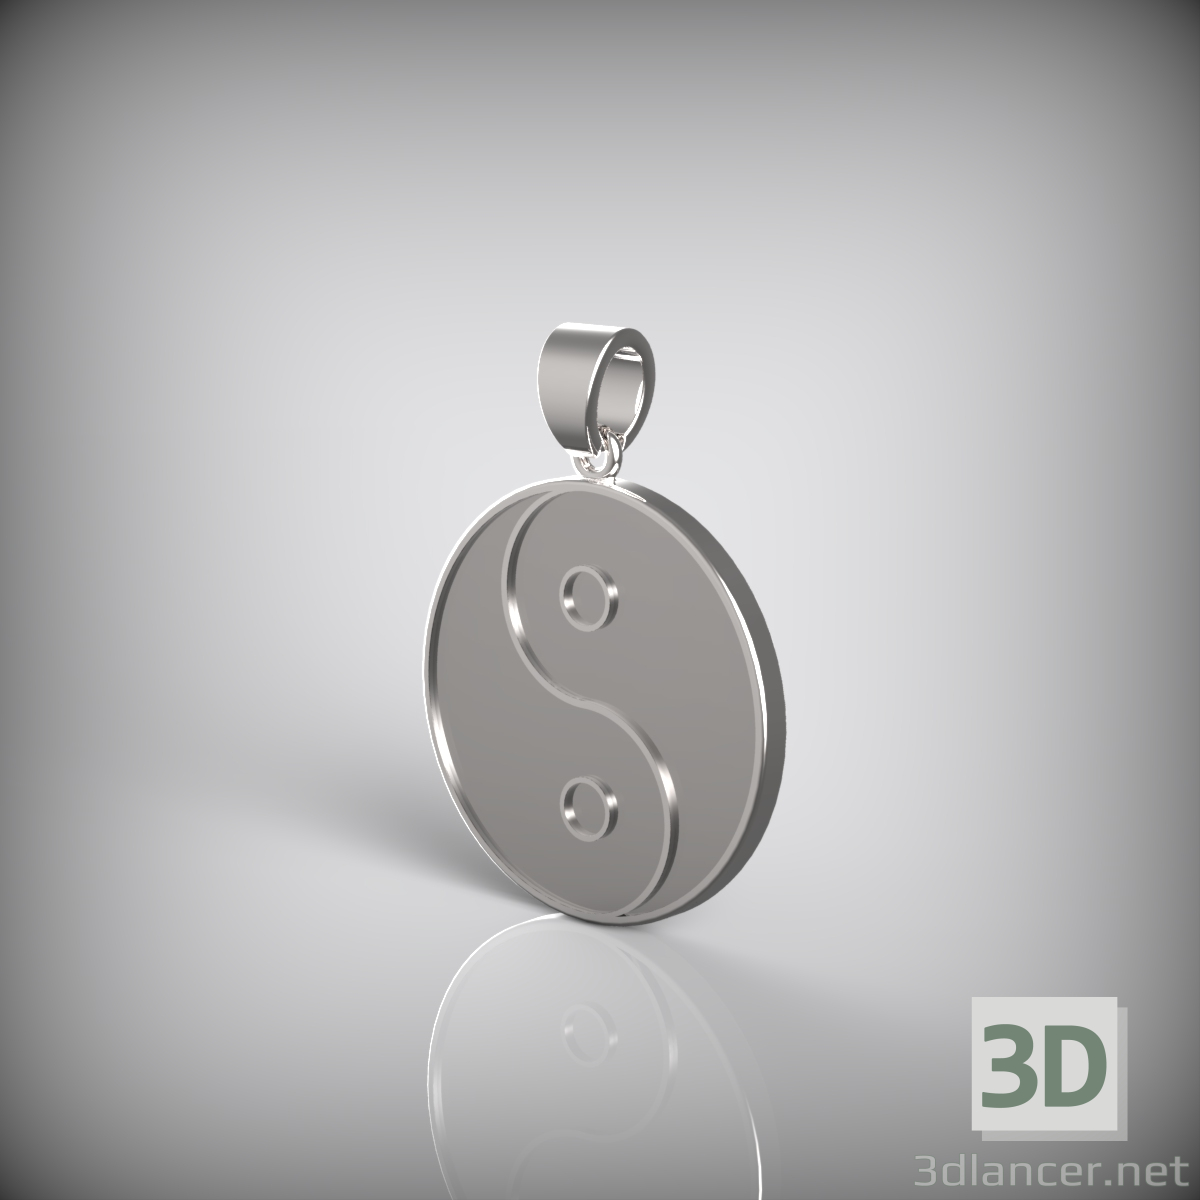 3d Yin and Yang pendant model buy - render